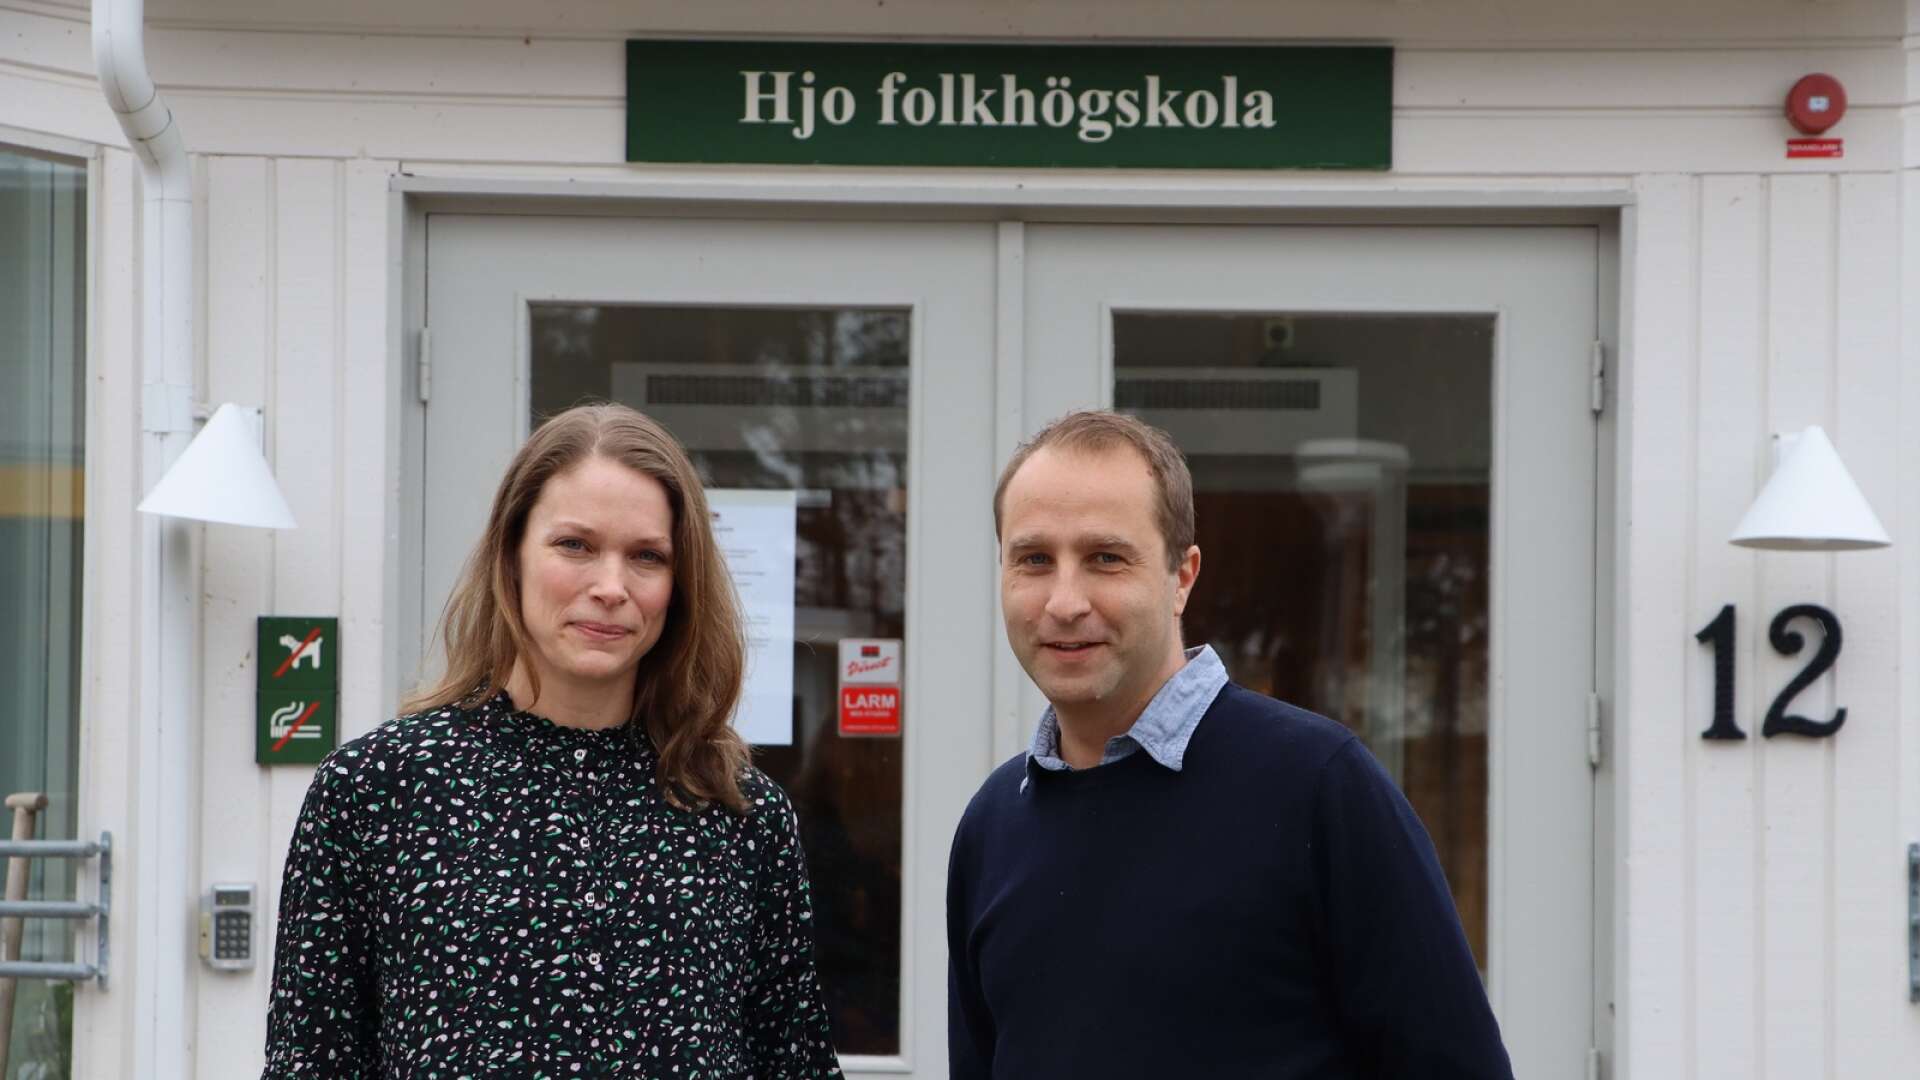 Hjo folkhögskola har öppet hus den 21 mars som Viktoria Johansson, ekonom, och Andreas Cederlund, rektor, välkomnar till. 